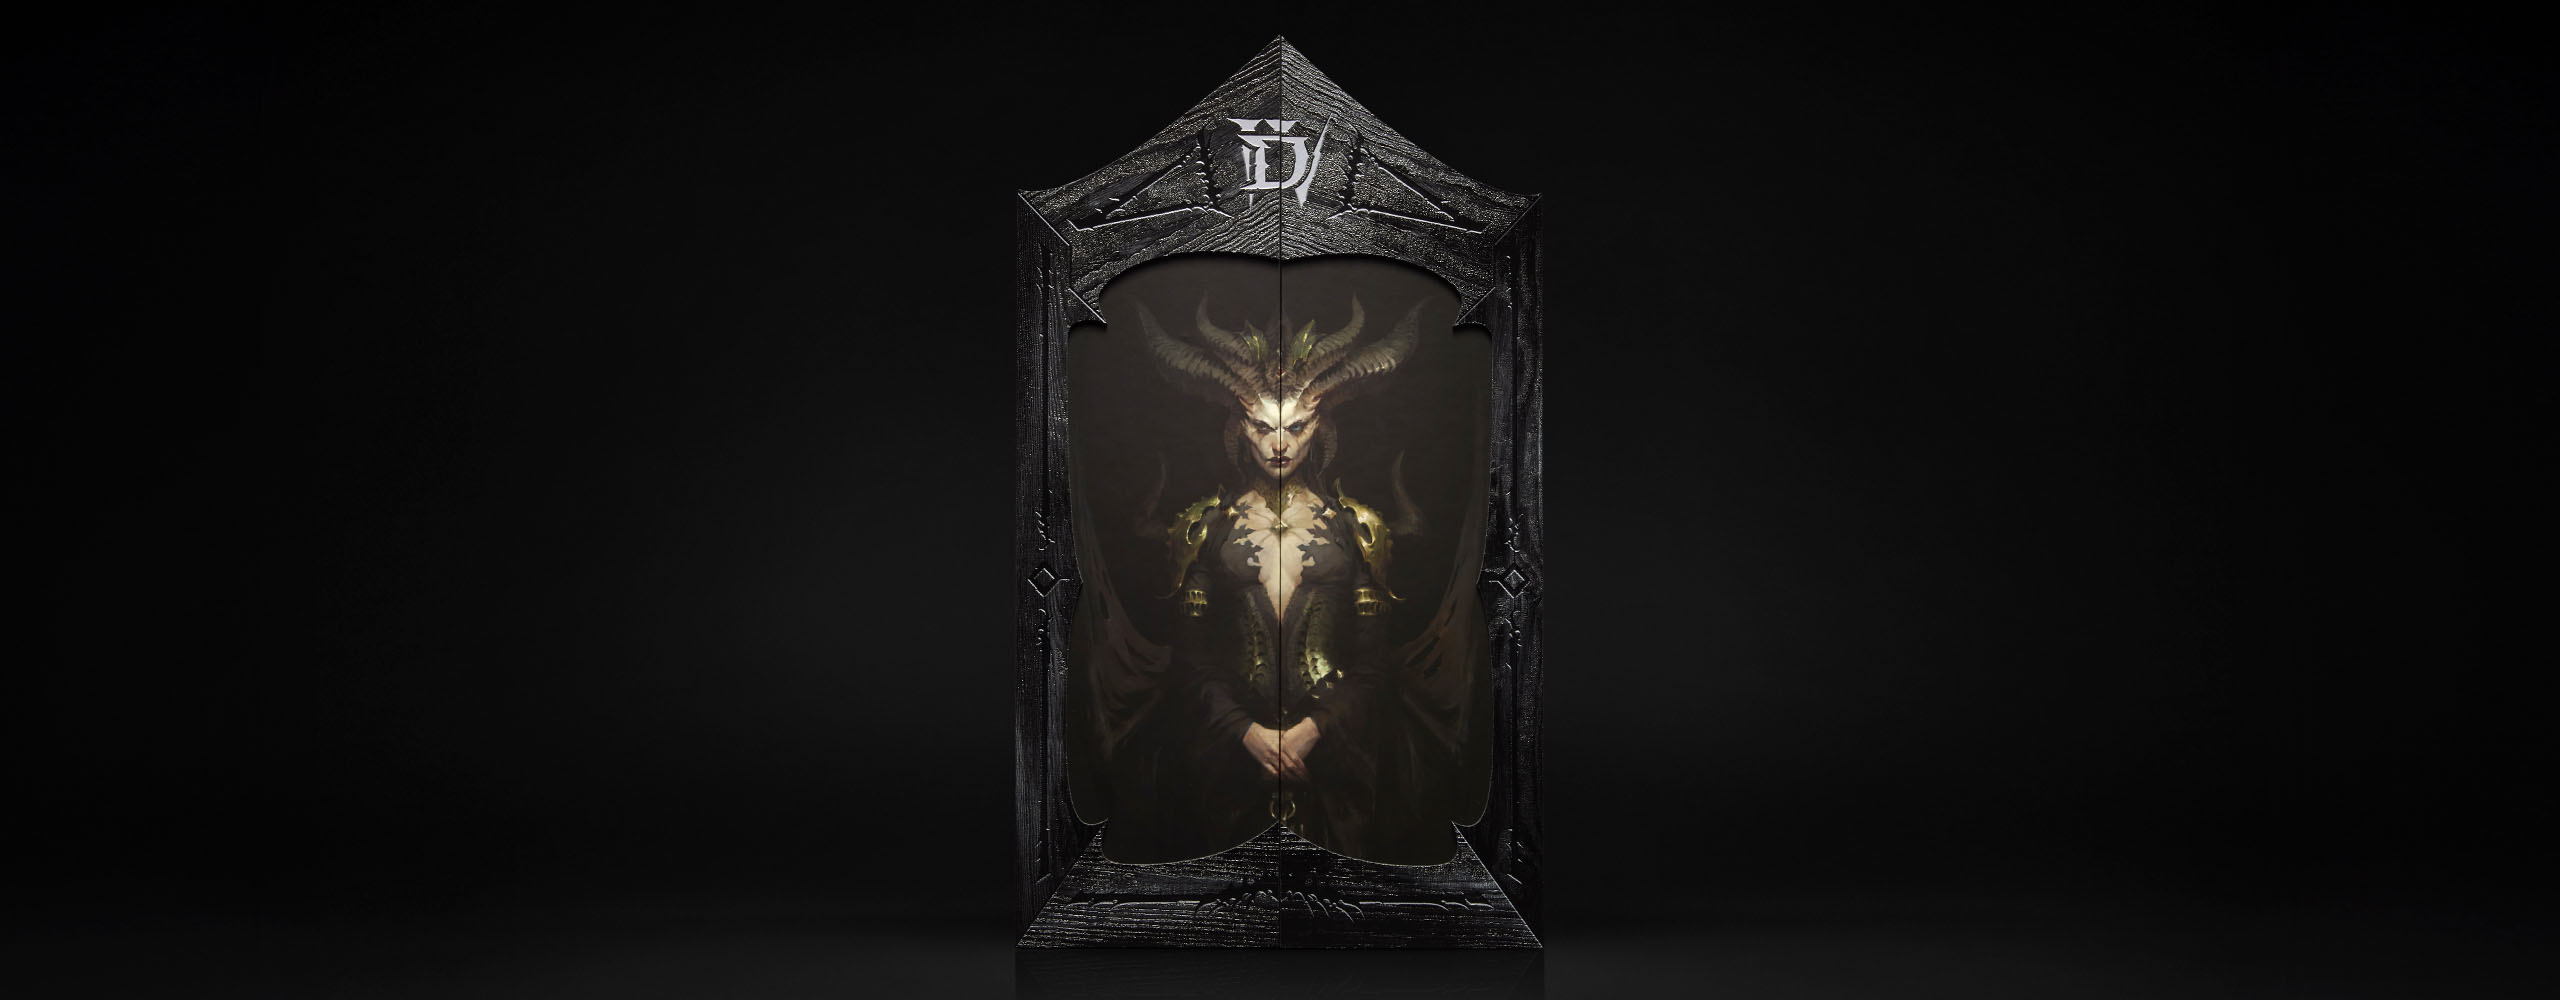 Diablo influencer kit banner image